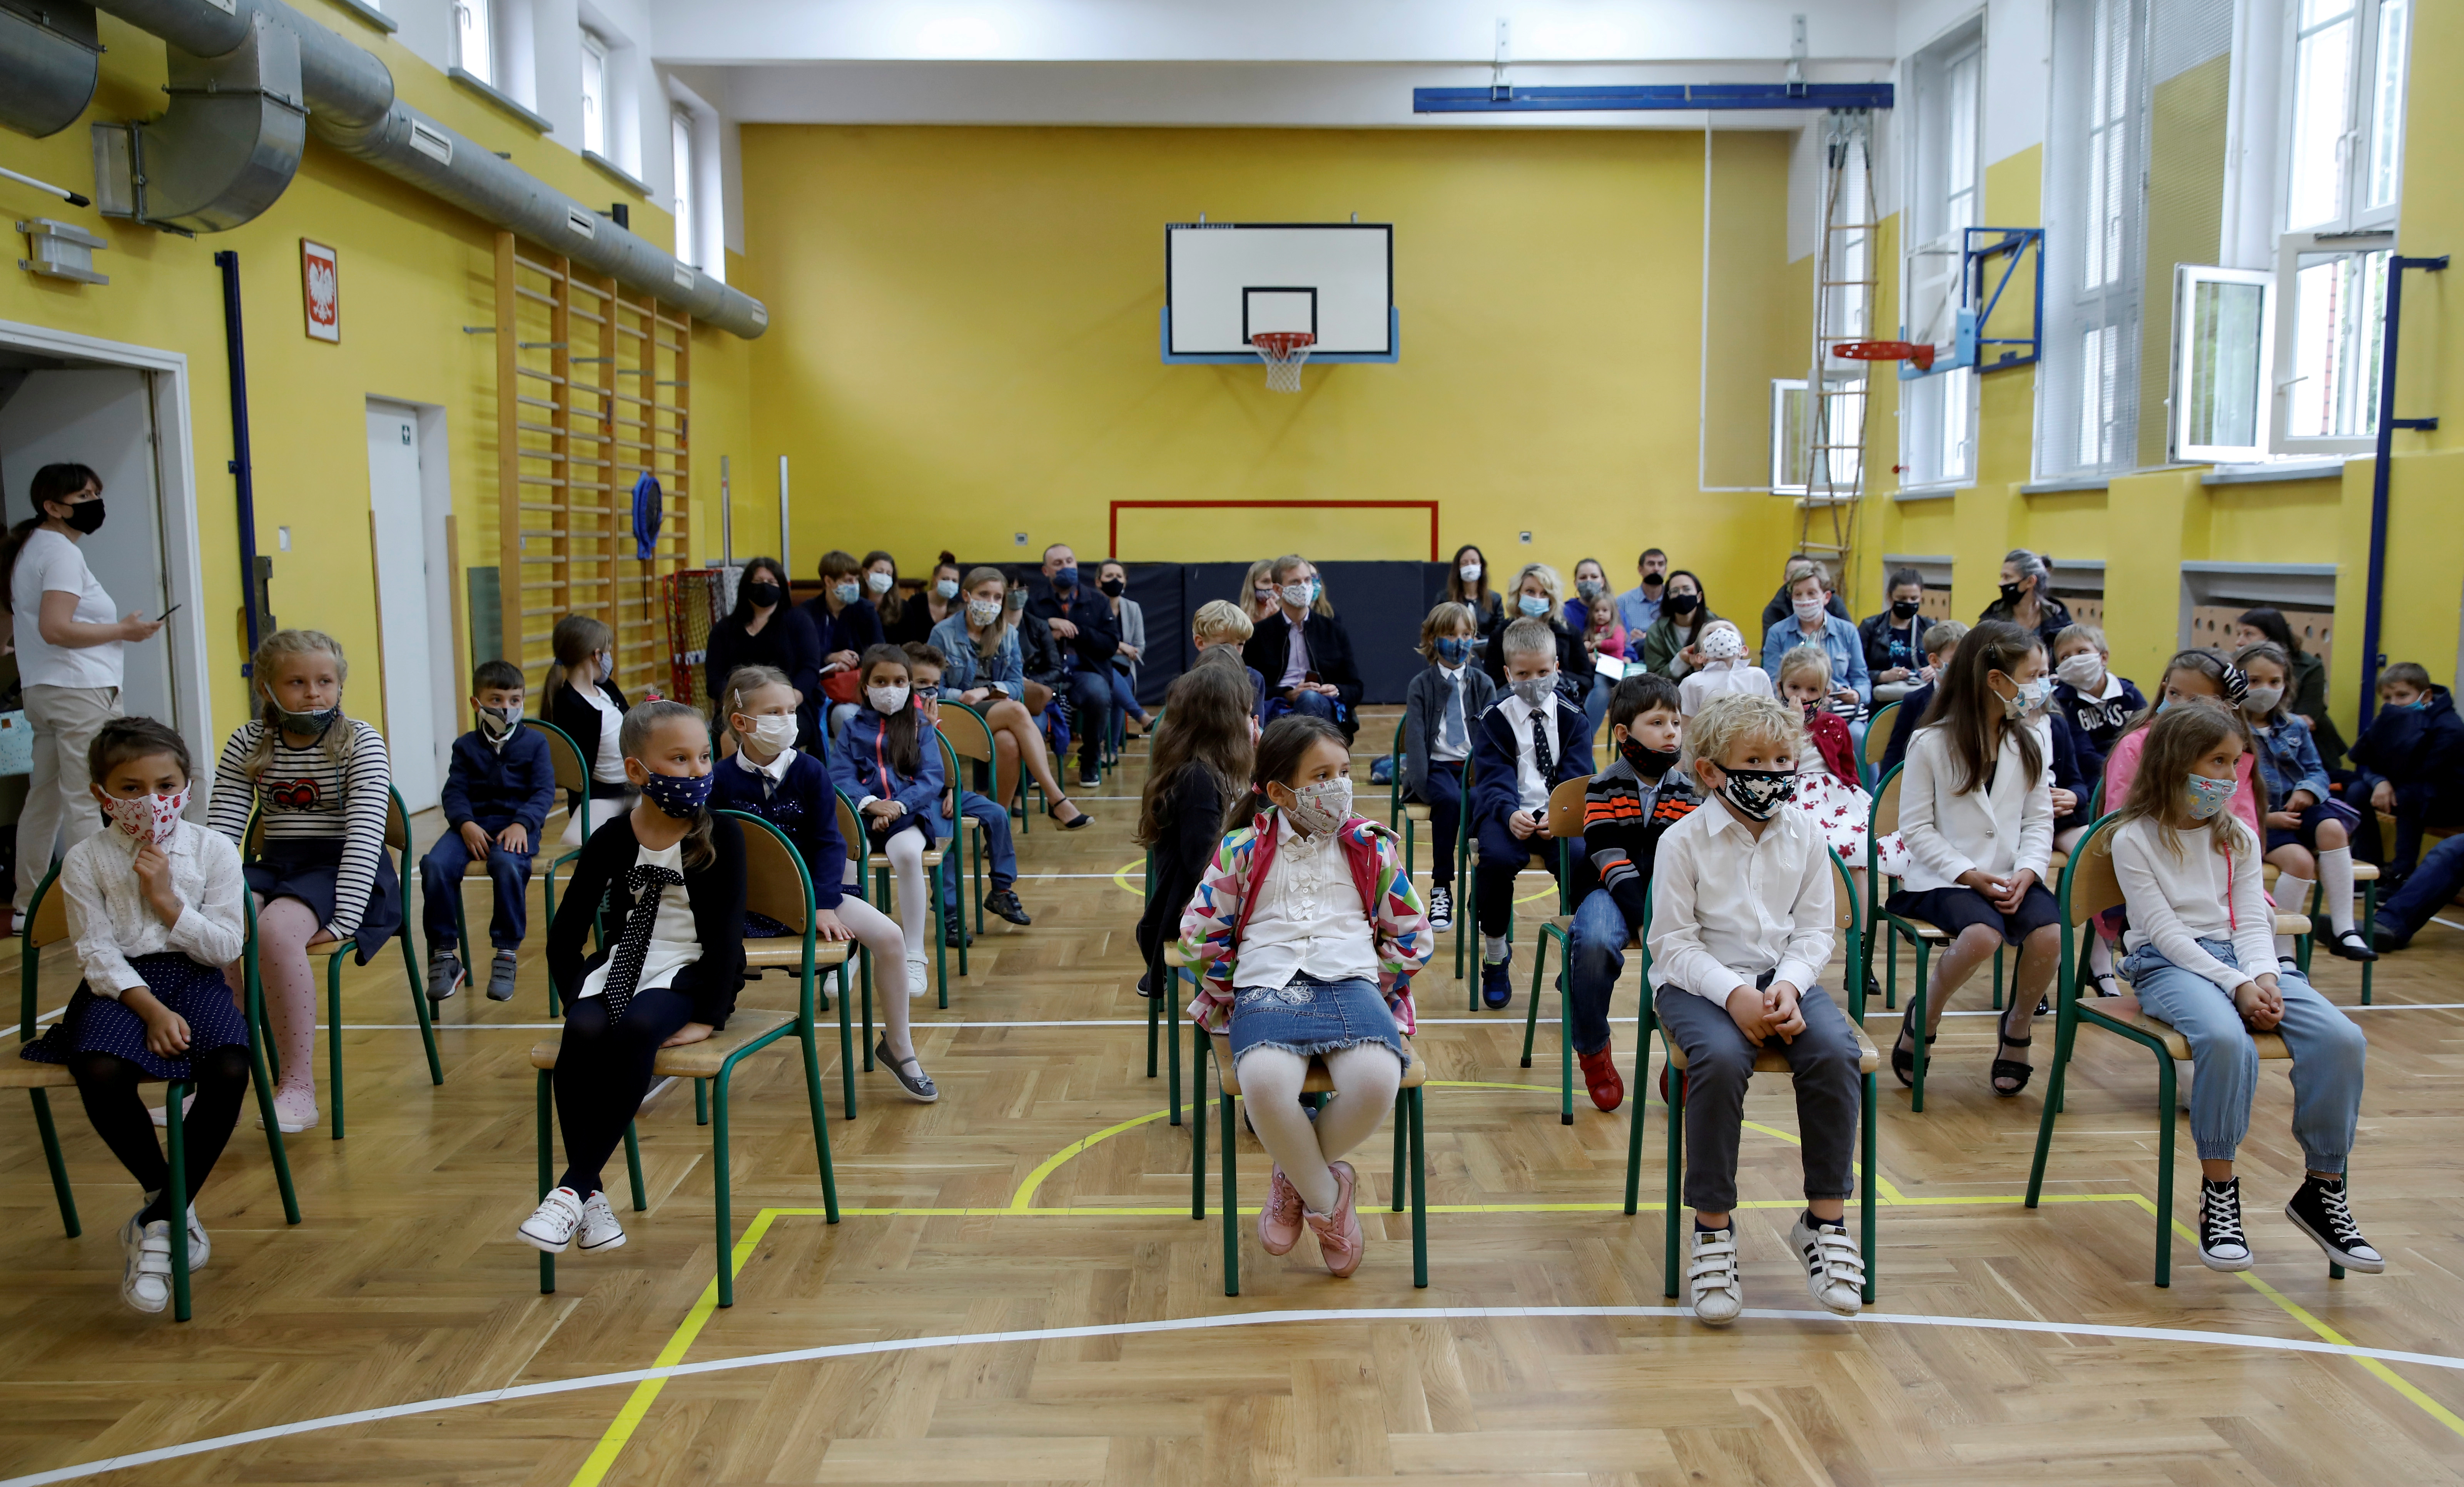 Niños en un acto escolar en Varsovia, durante la pandemia del coronavirus. REUTERS/Kacper Pempel/File Photo